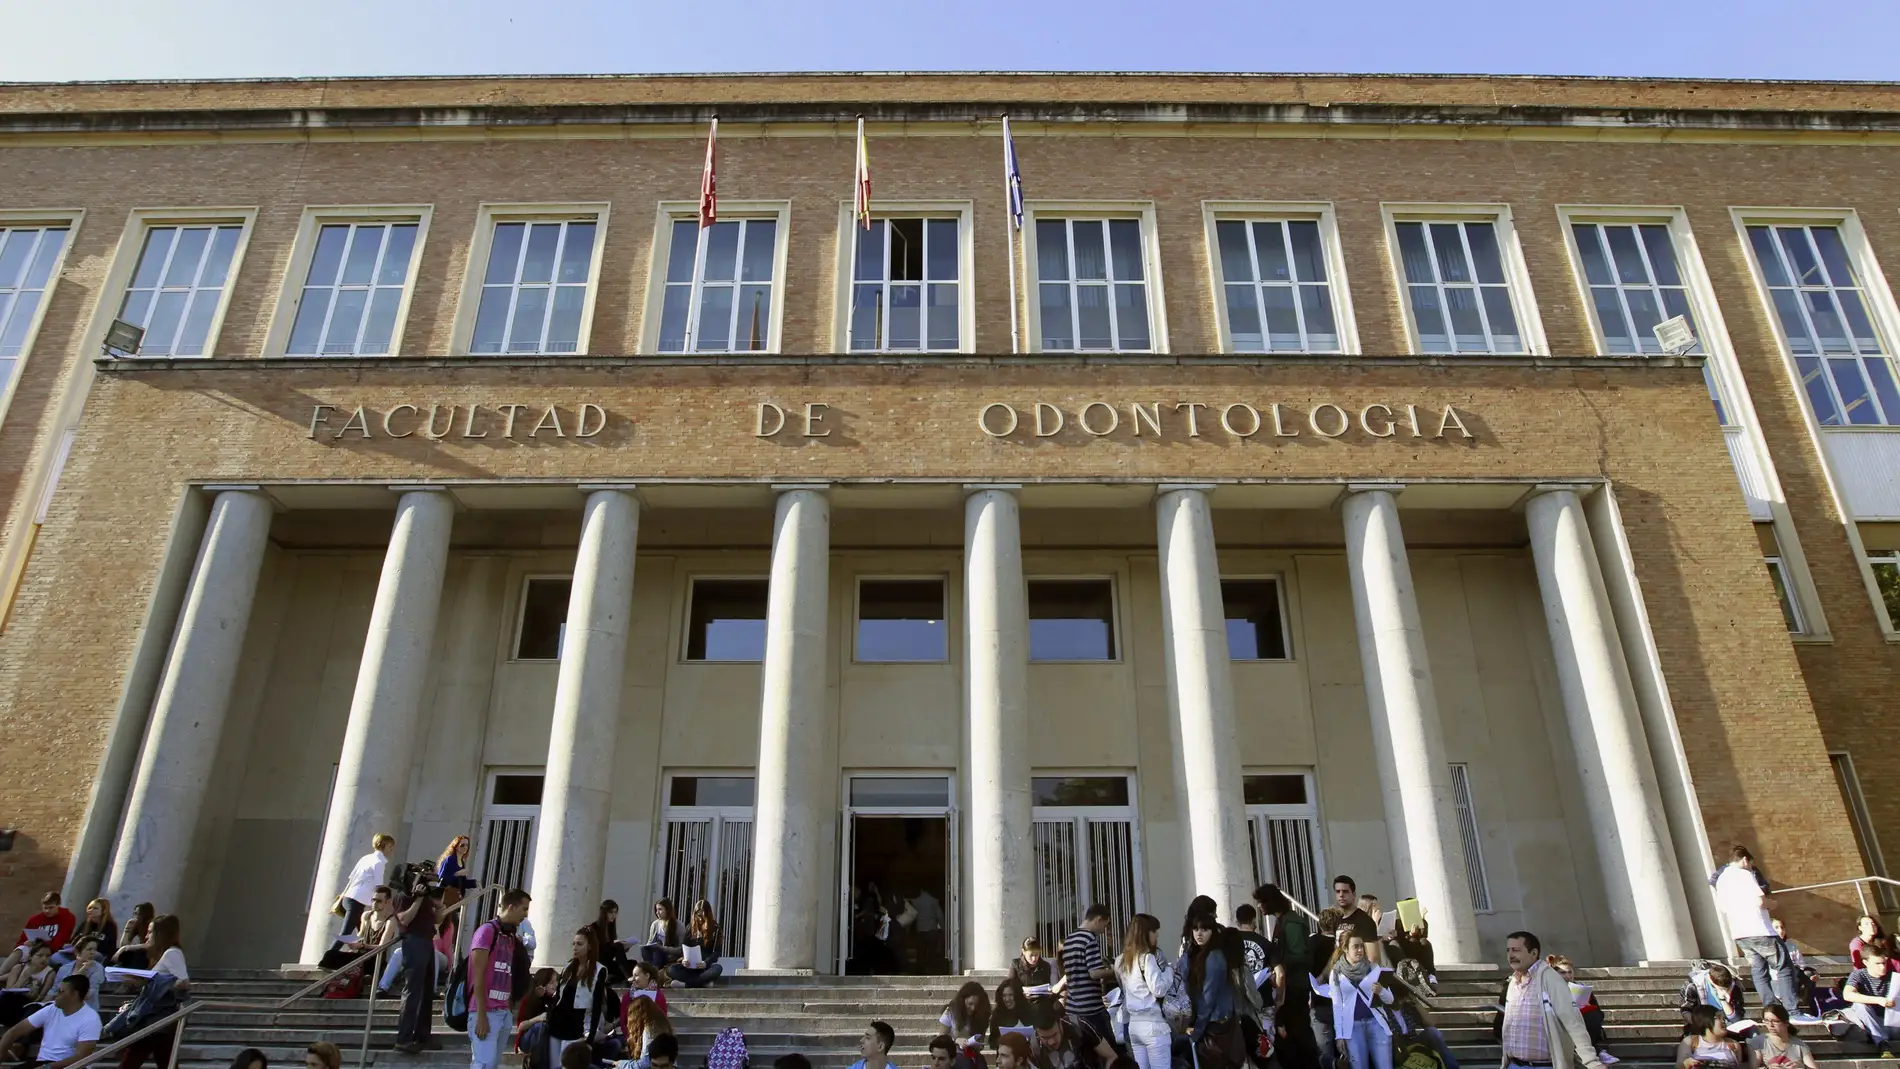 Fachada de la Facultad de Odontología de la Universidad Complutense de Madrid